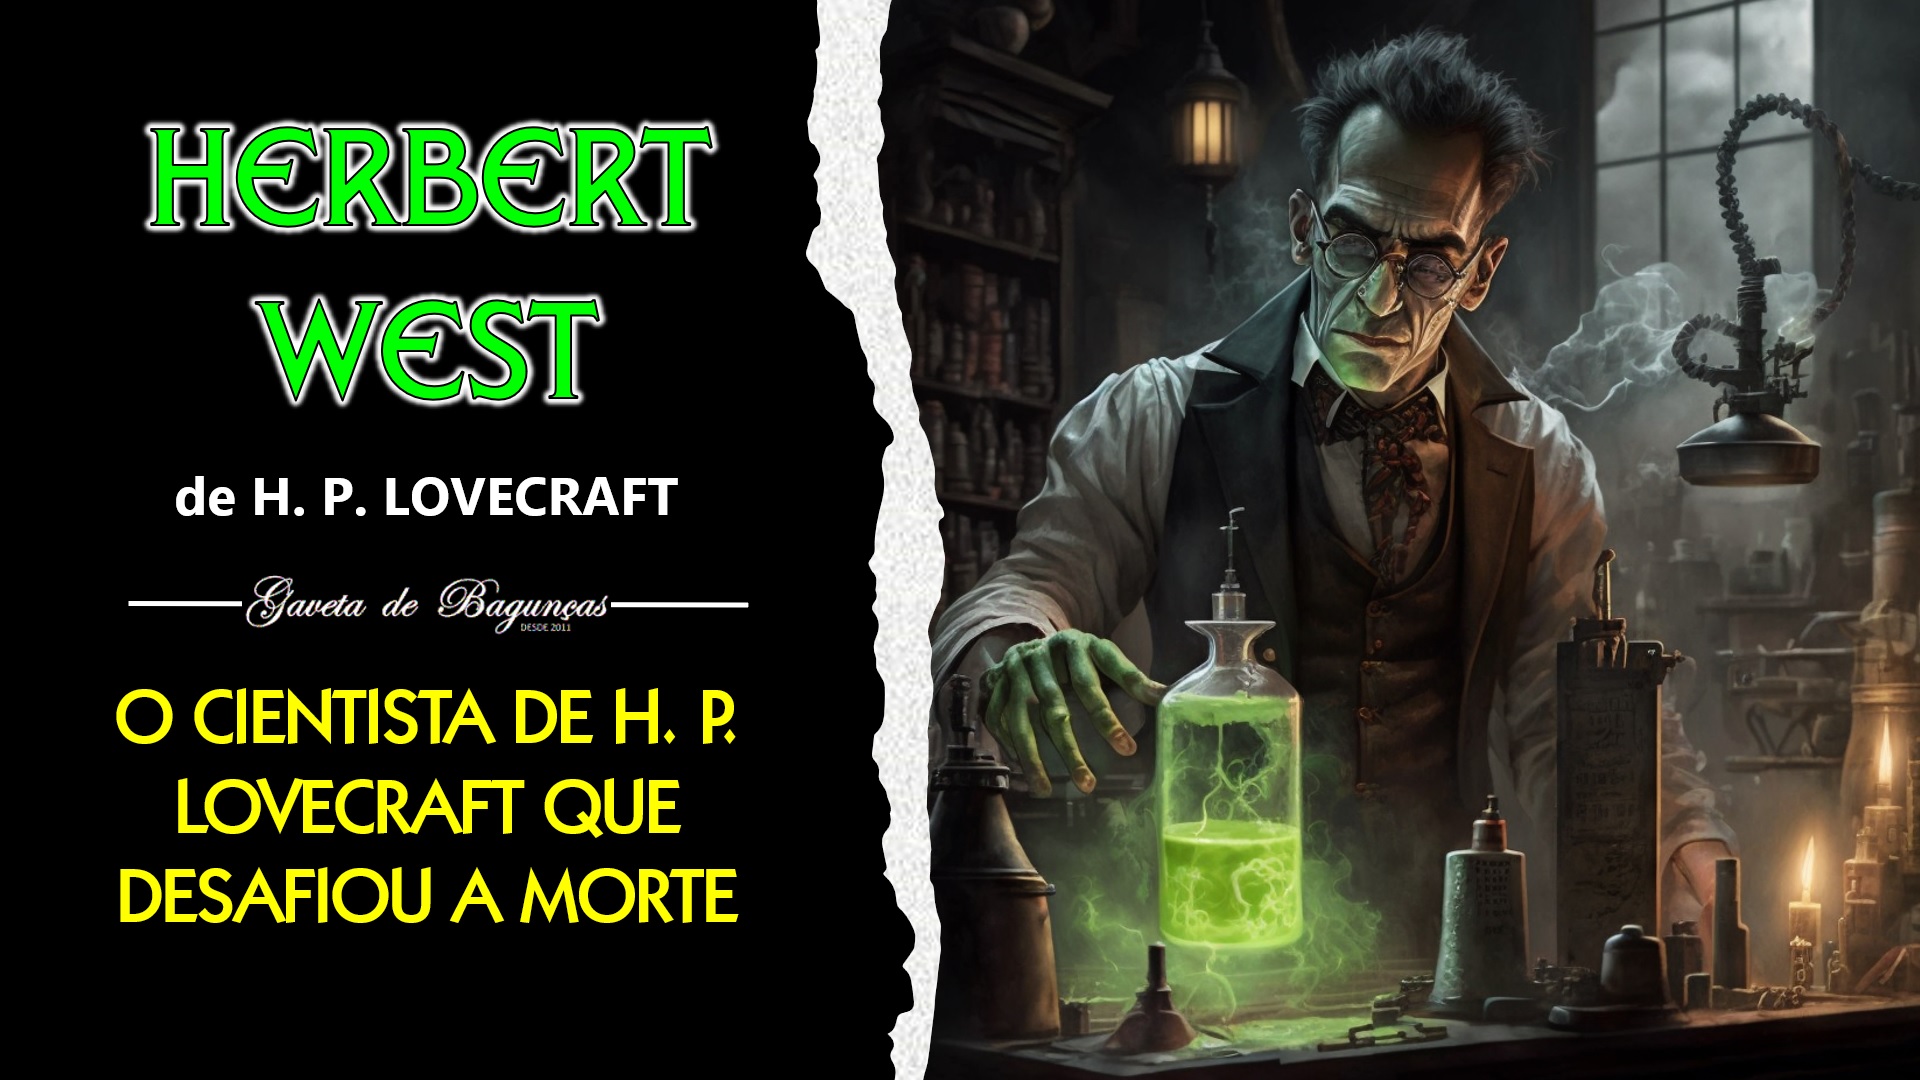 Explore o lado obscuro de Lovecraft com Herbert West: o cientista louco que inspirou o gênero zumbi moderno.